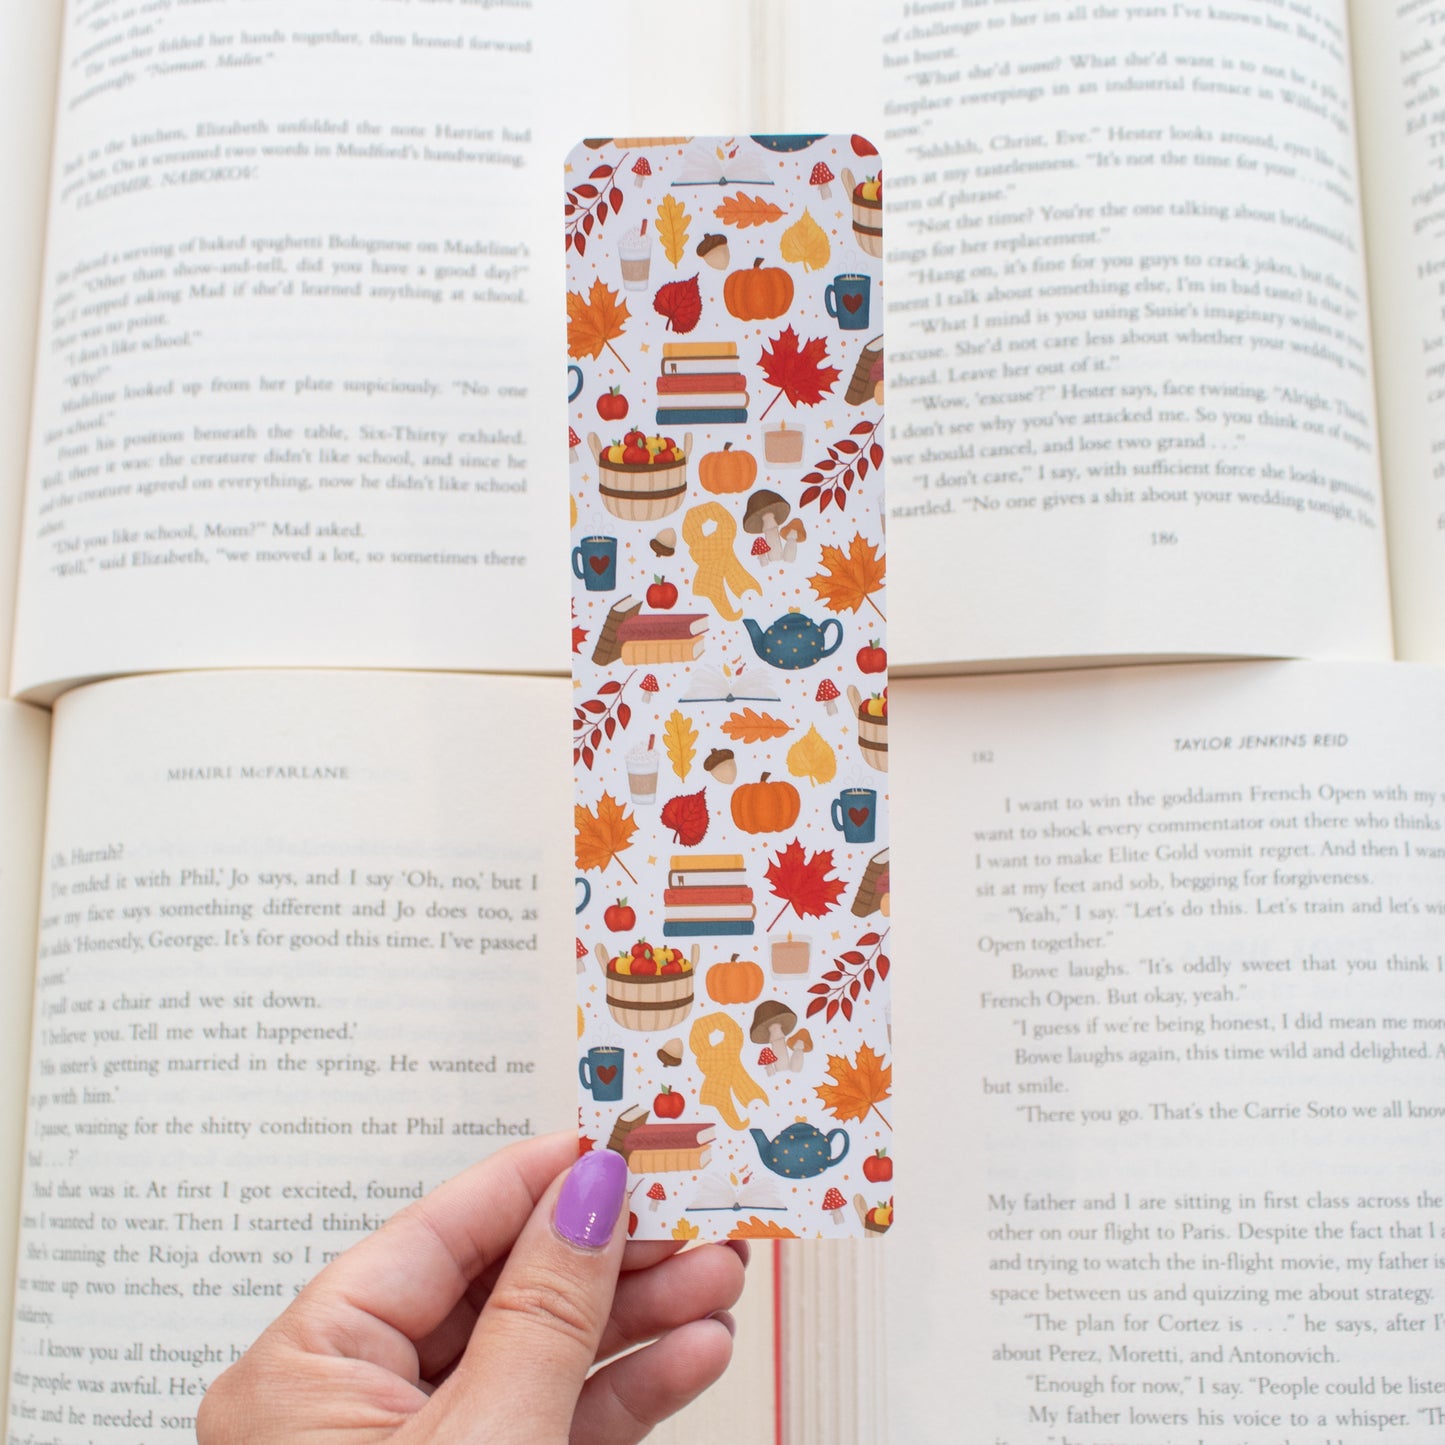 Hello Autumn Bookmark